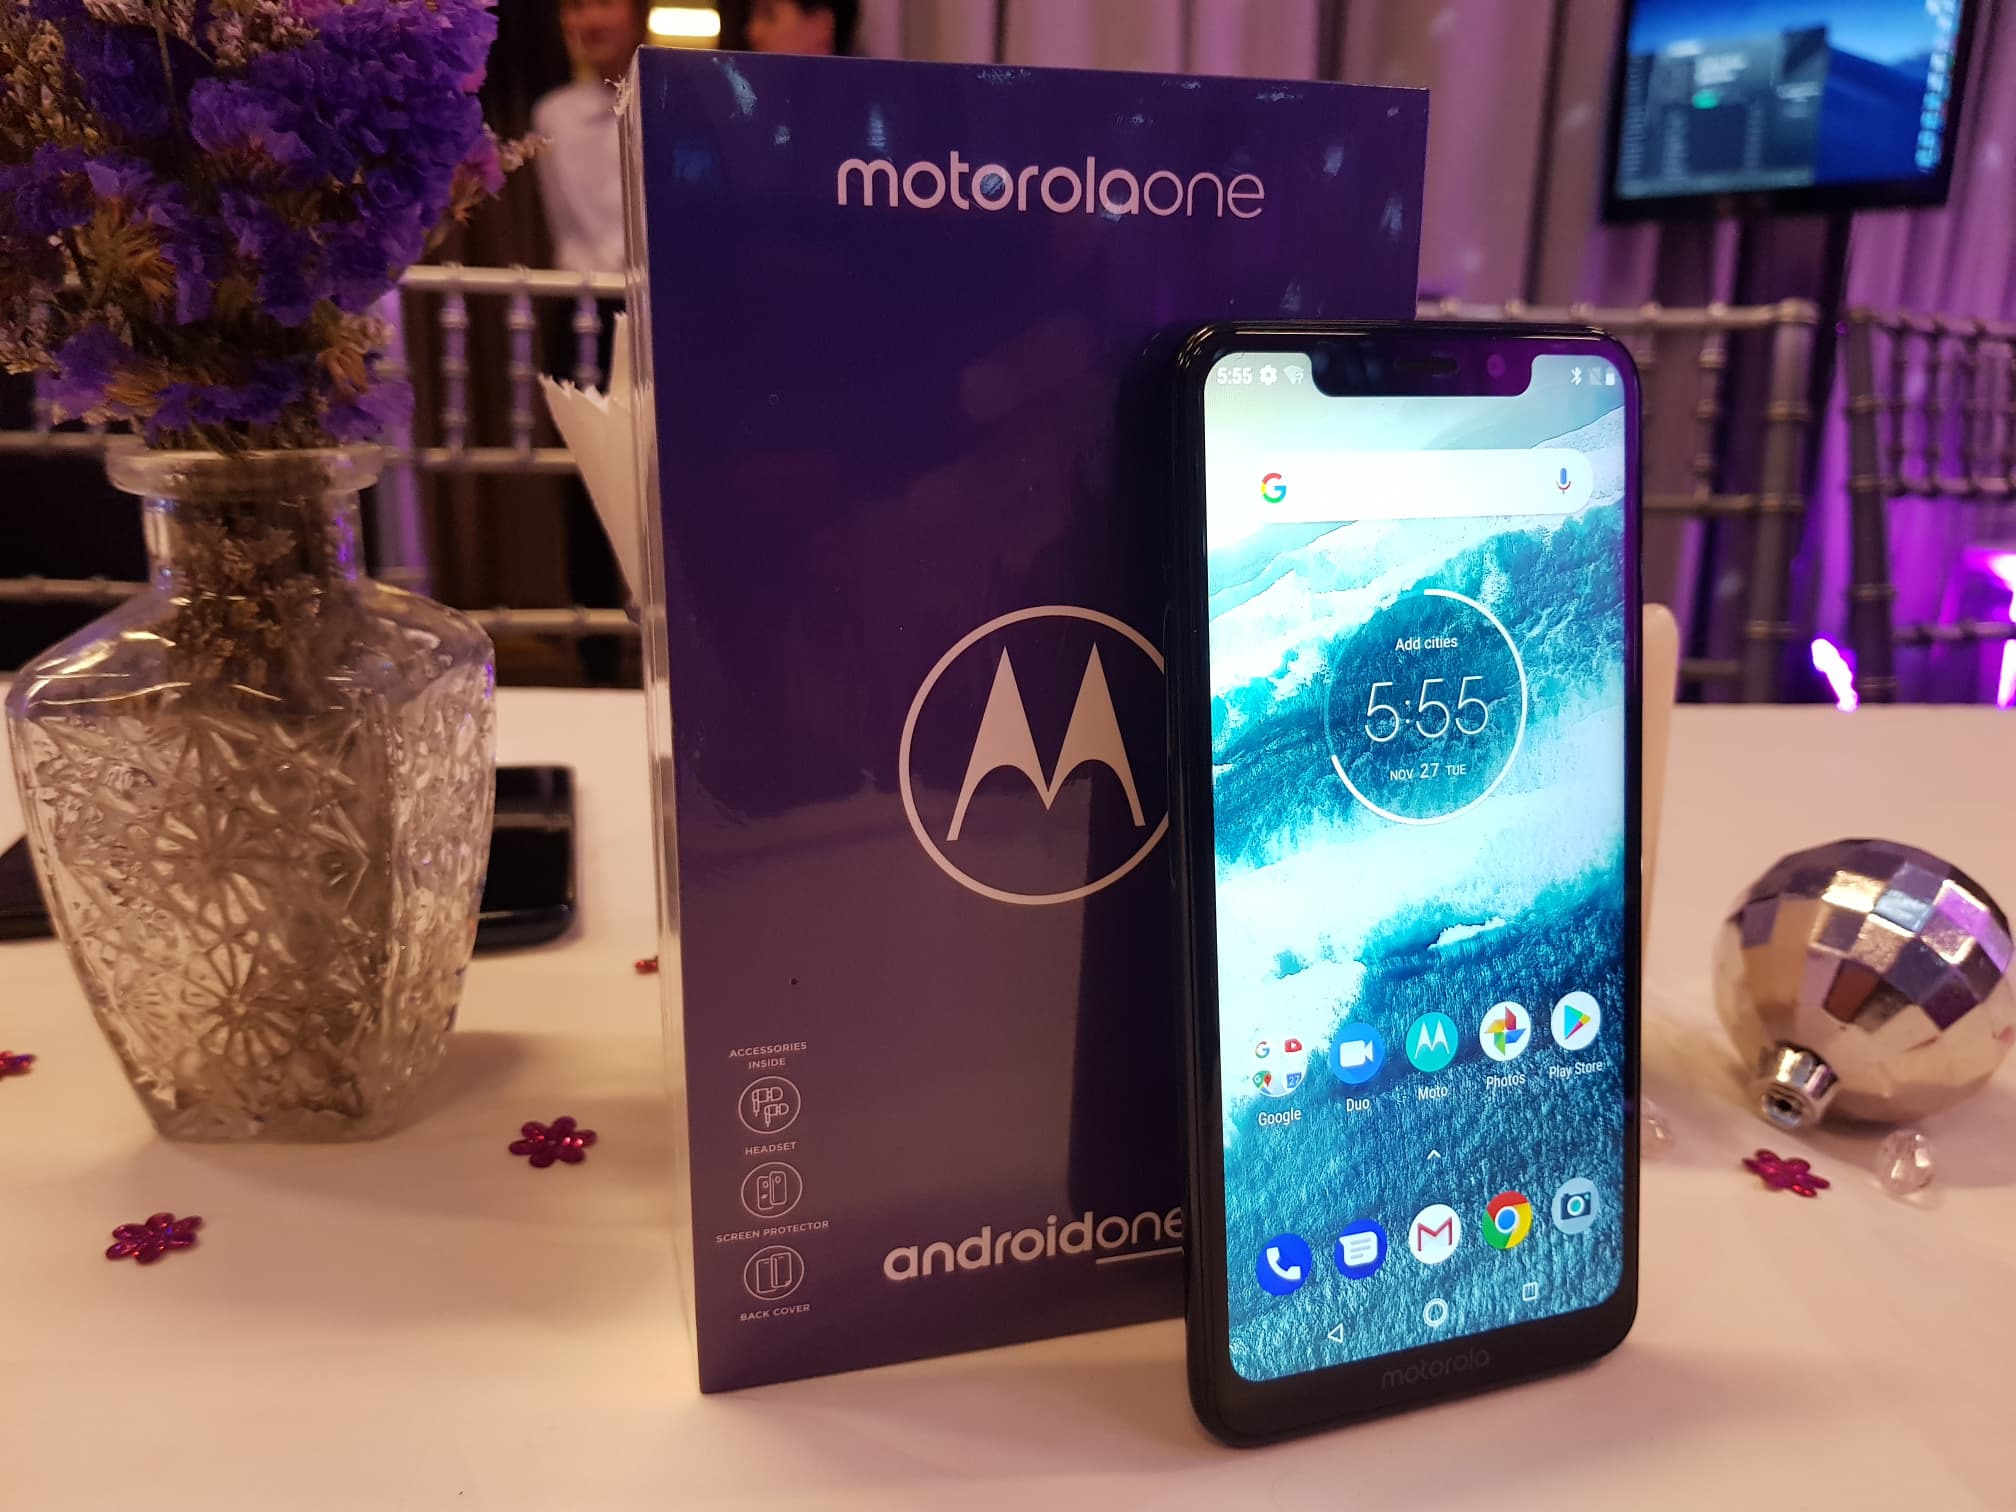 เปิดตัว Motorola One มือถือ Android One รุ่นล่าสุด พร้อมวางจำหน่ายในราคา 7,990 บาท